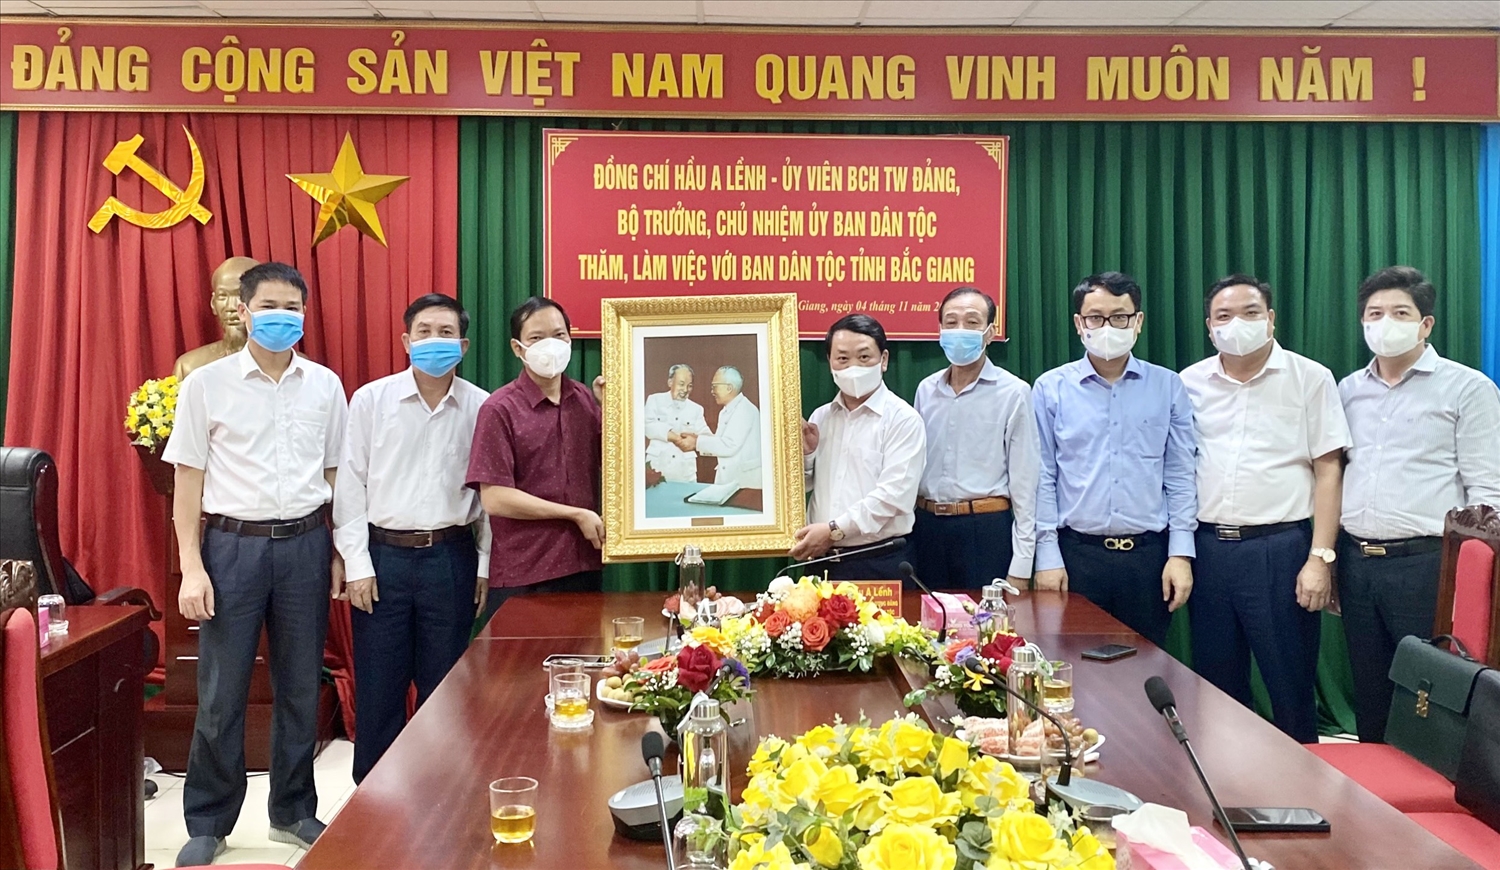 Bộ trưởng, Chủ nhiệm UBDT Hầu A Lềnh tặng quà Ban Dân tộc tỉnh Bắc Giang 